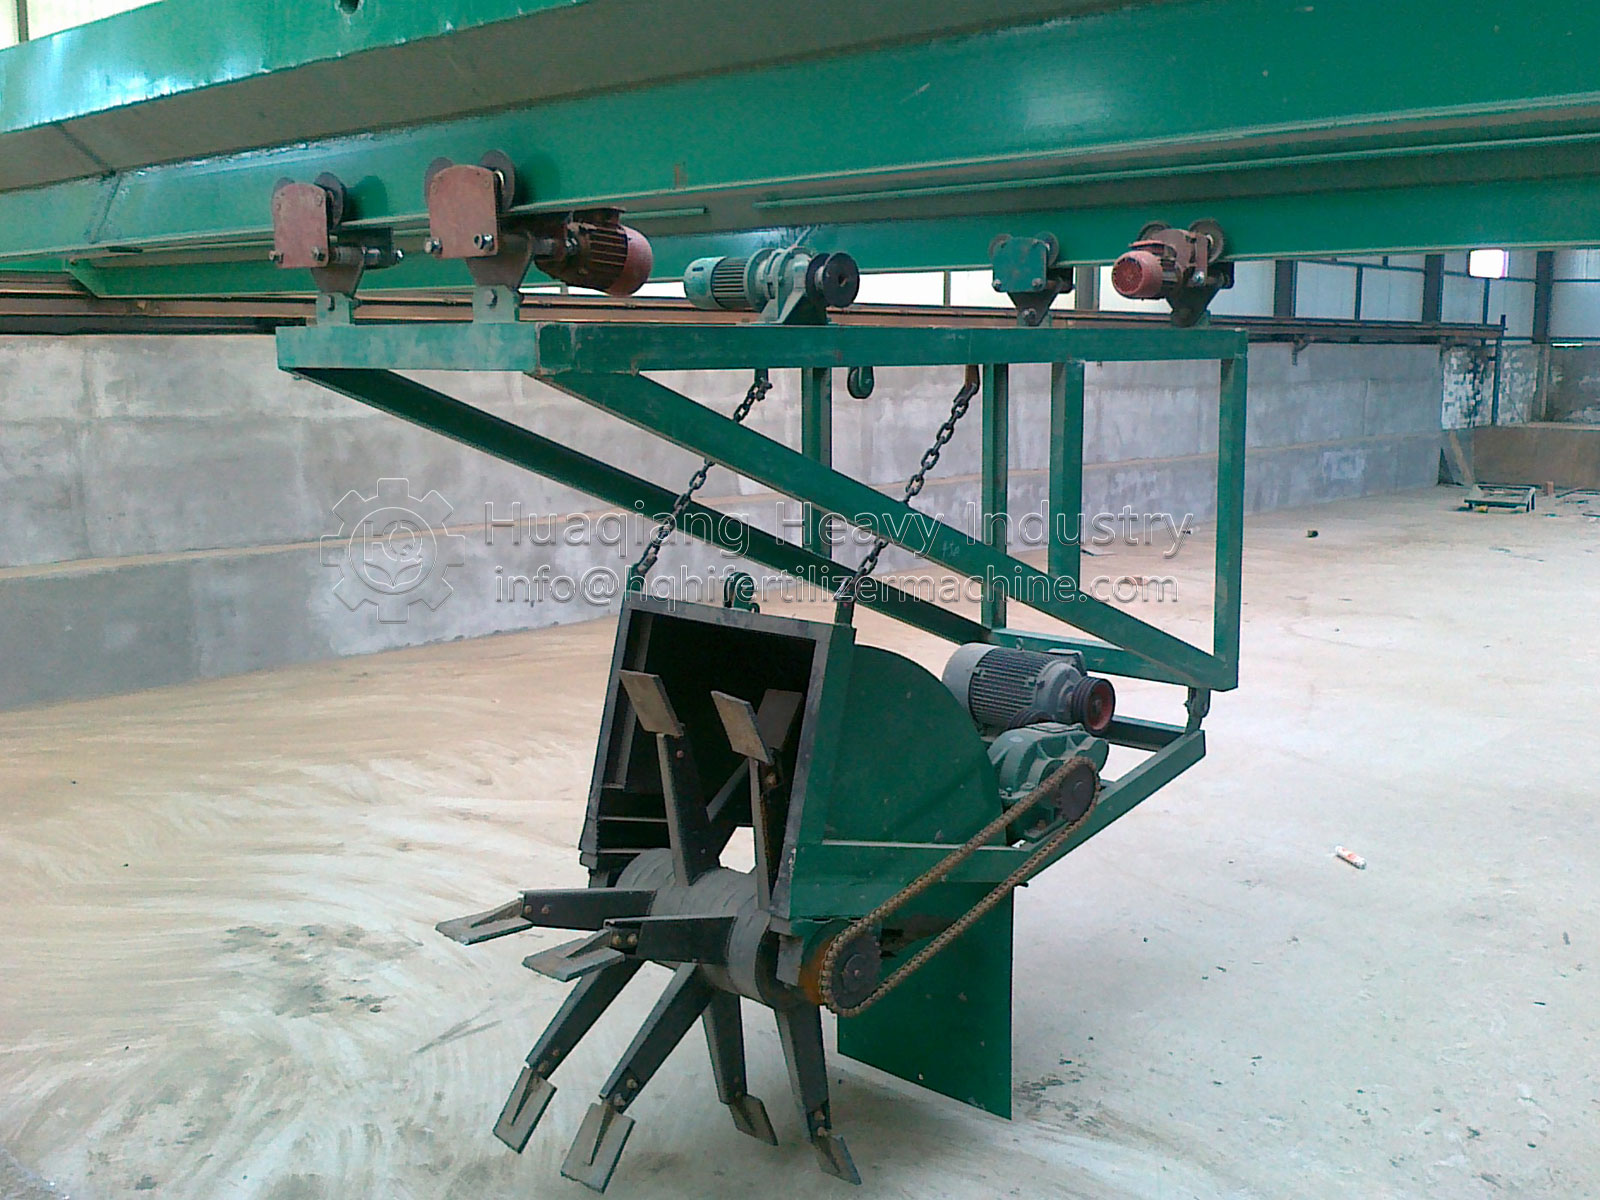 fertilizer granulation machine